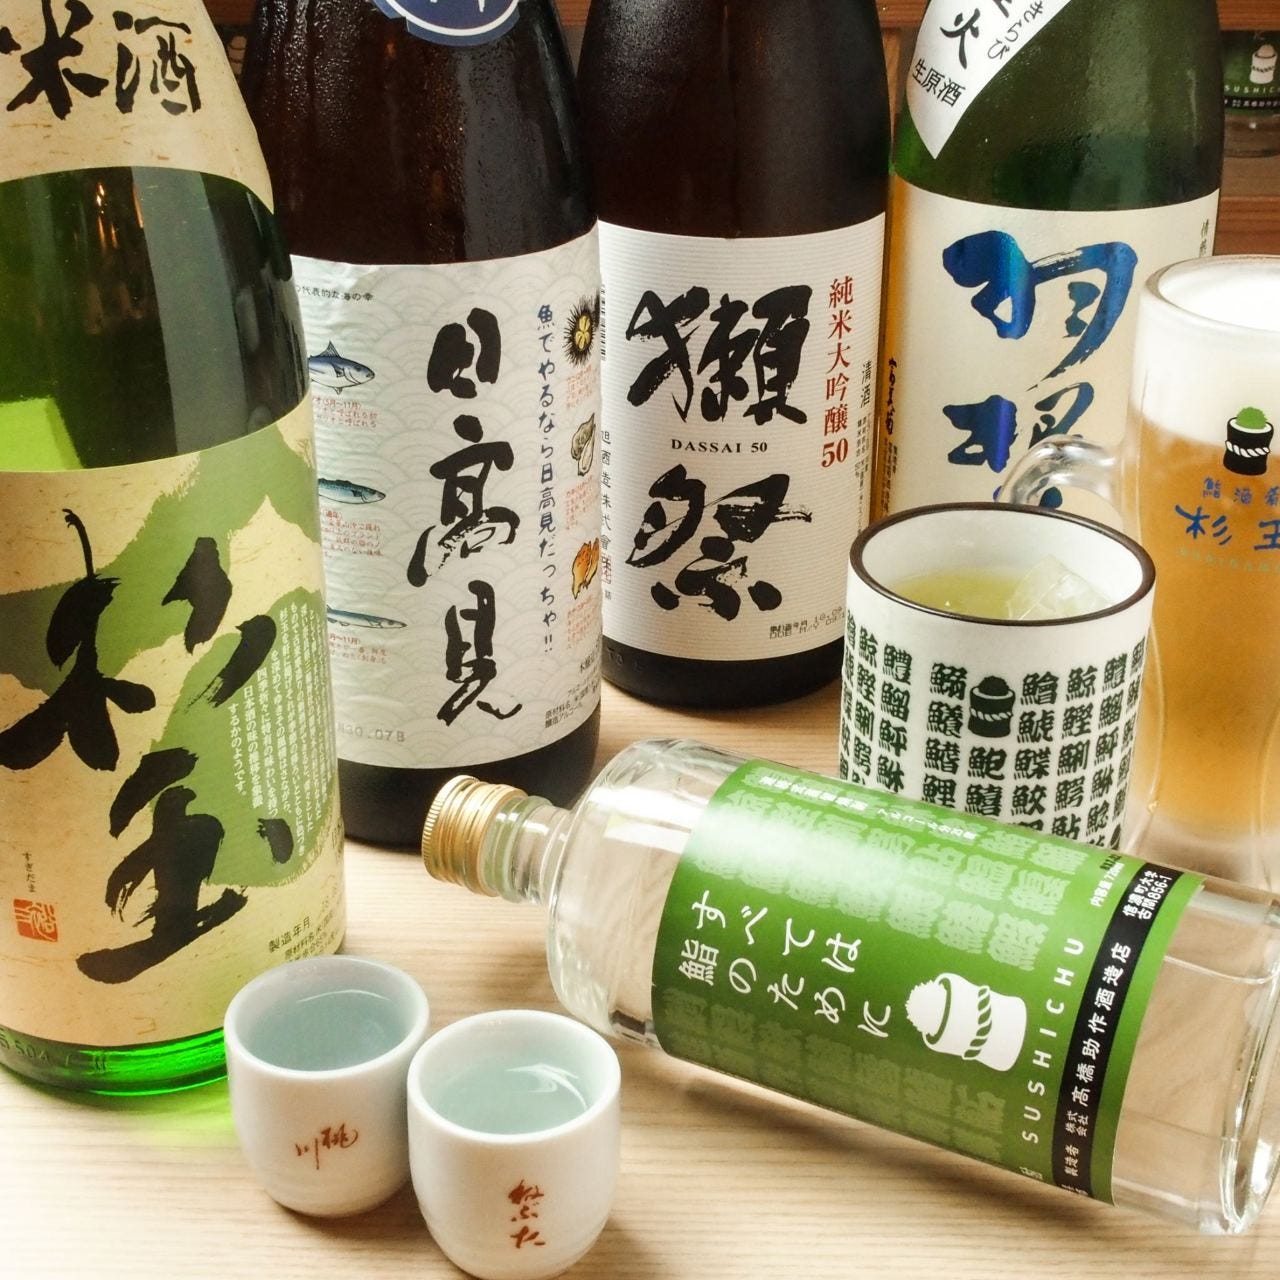 日本酒は0.5合からご注文OK。いろいろな種類を楽しんでください